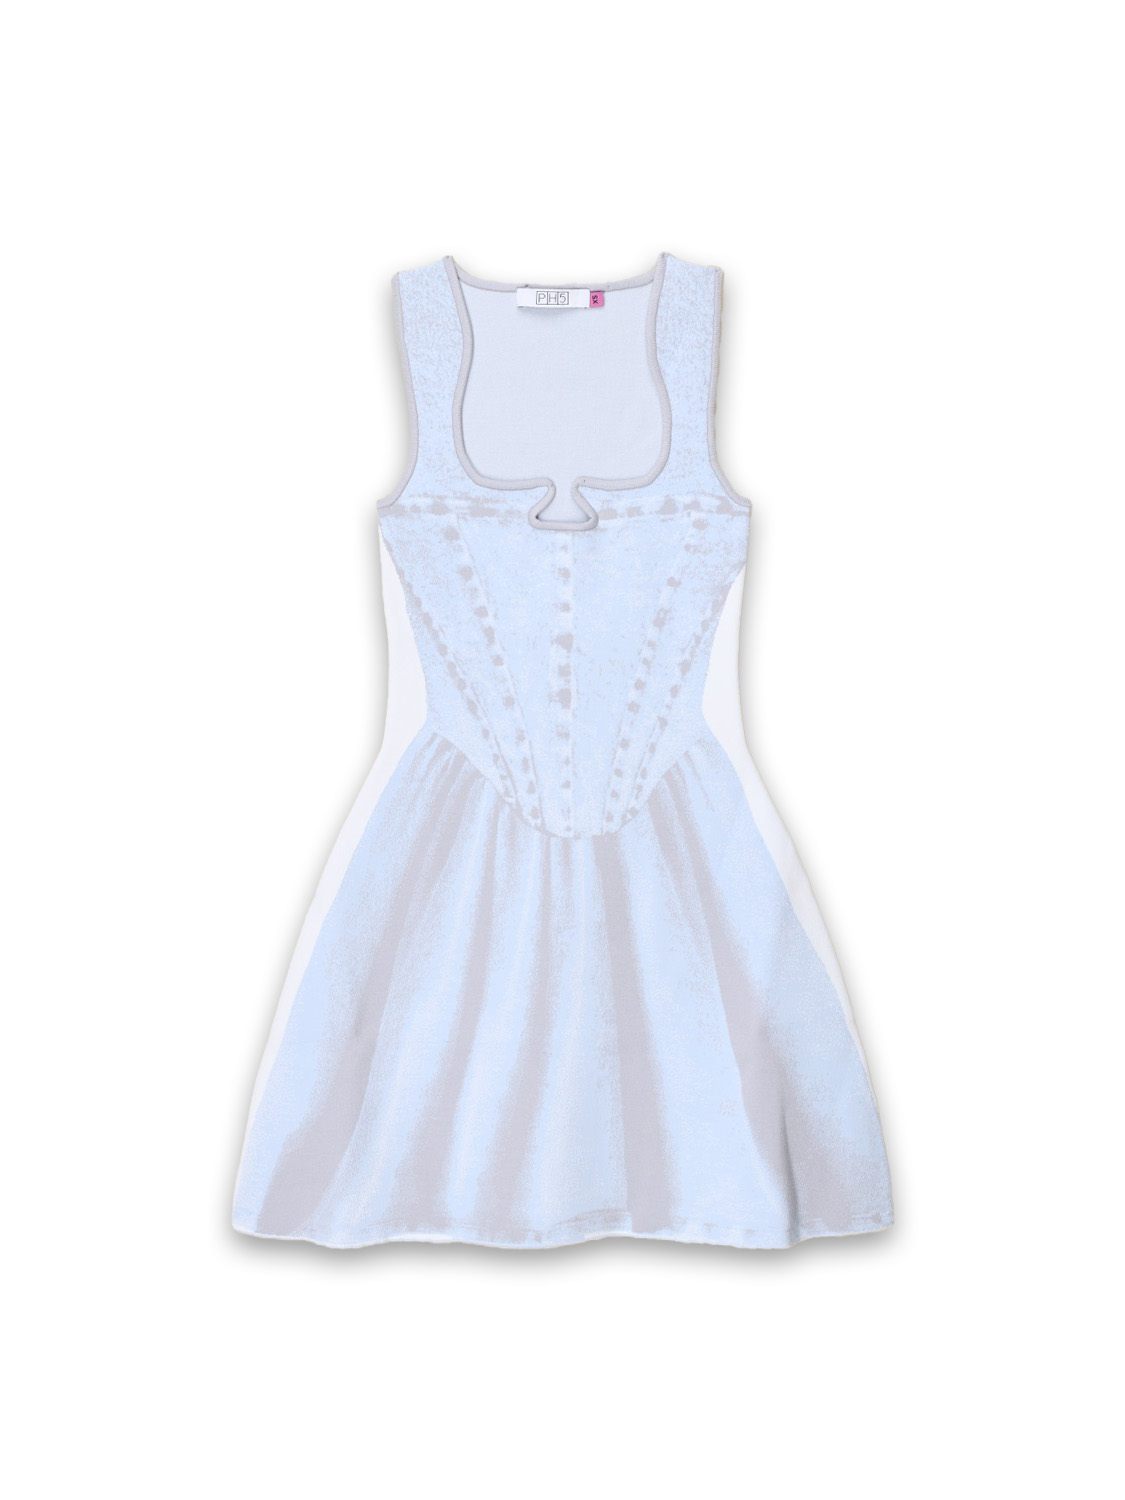 Poppy - Stretched knitwear mini dress with denim print 